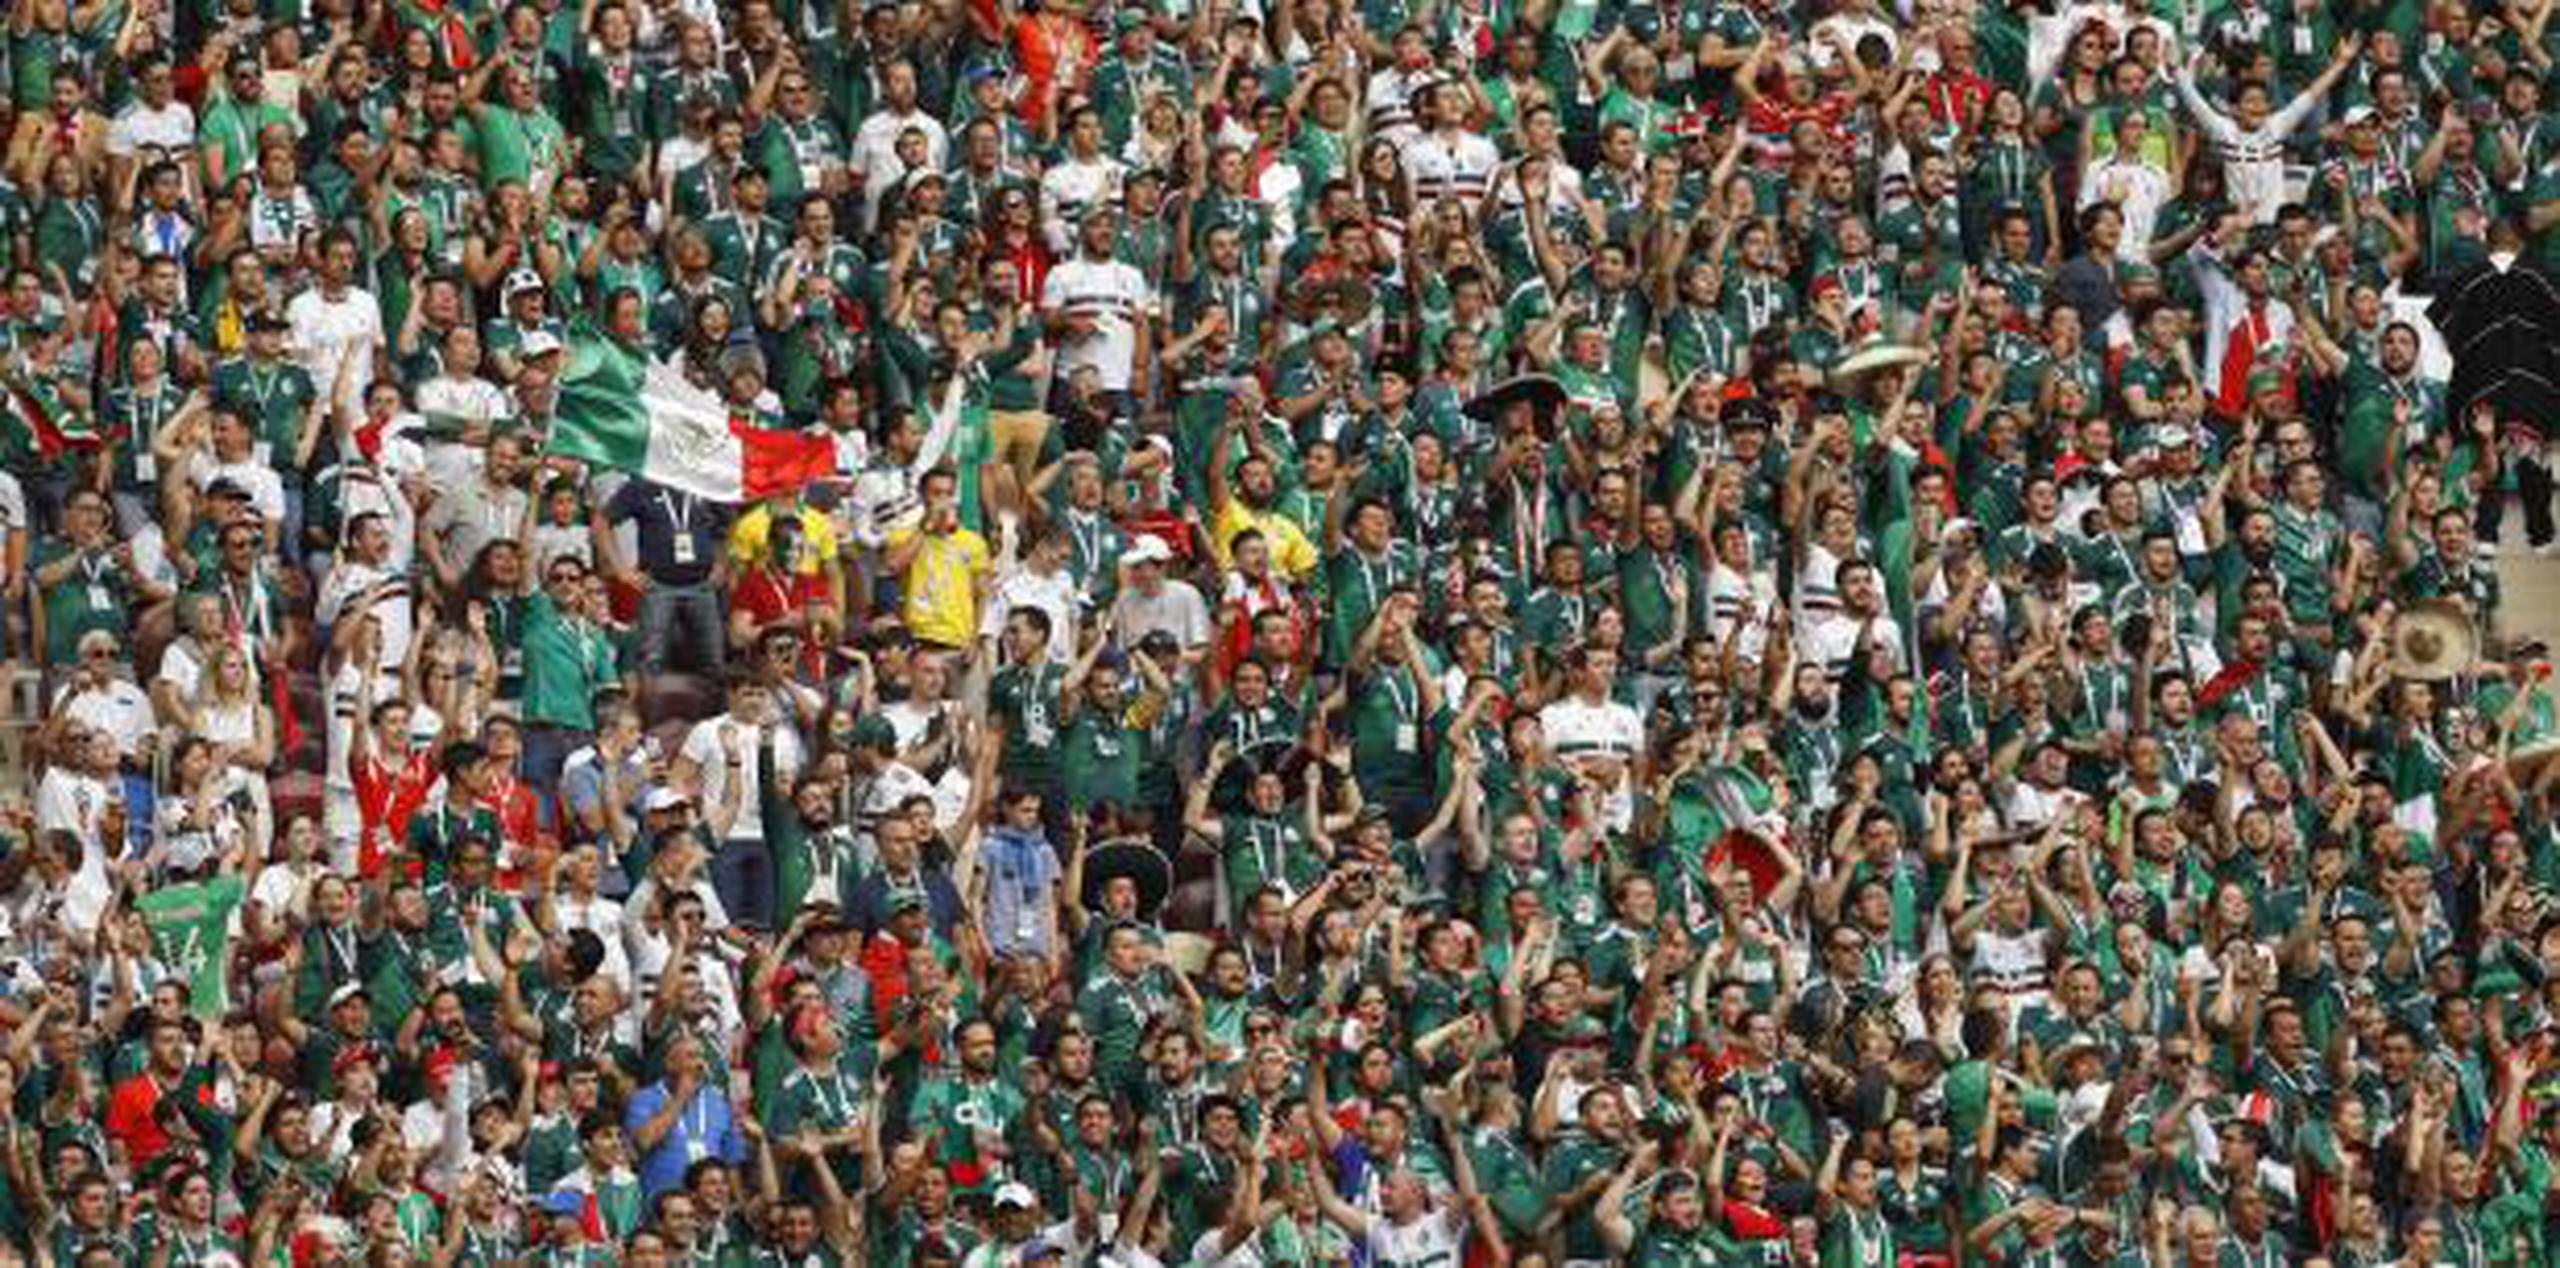 La Federación Mexicana y los mismos jugadores han pedido en el pasado a los aficionados que eviten el uso de ese grito para evitar mayores castigos. (AP / Victor R. Caivano)